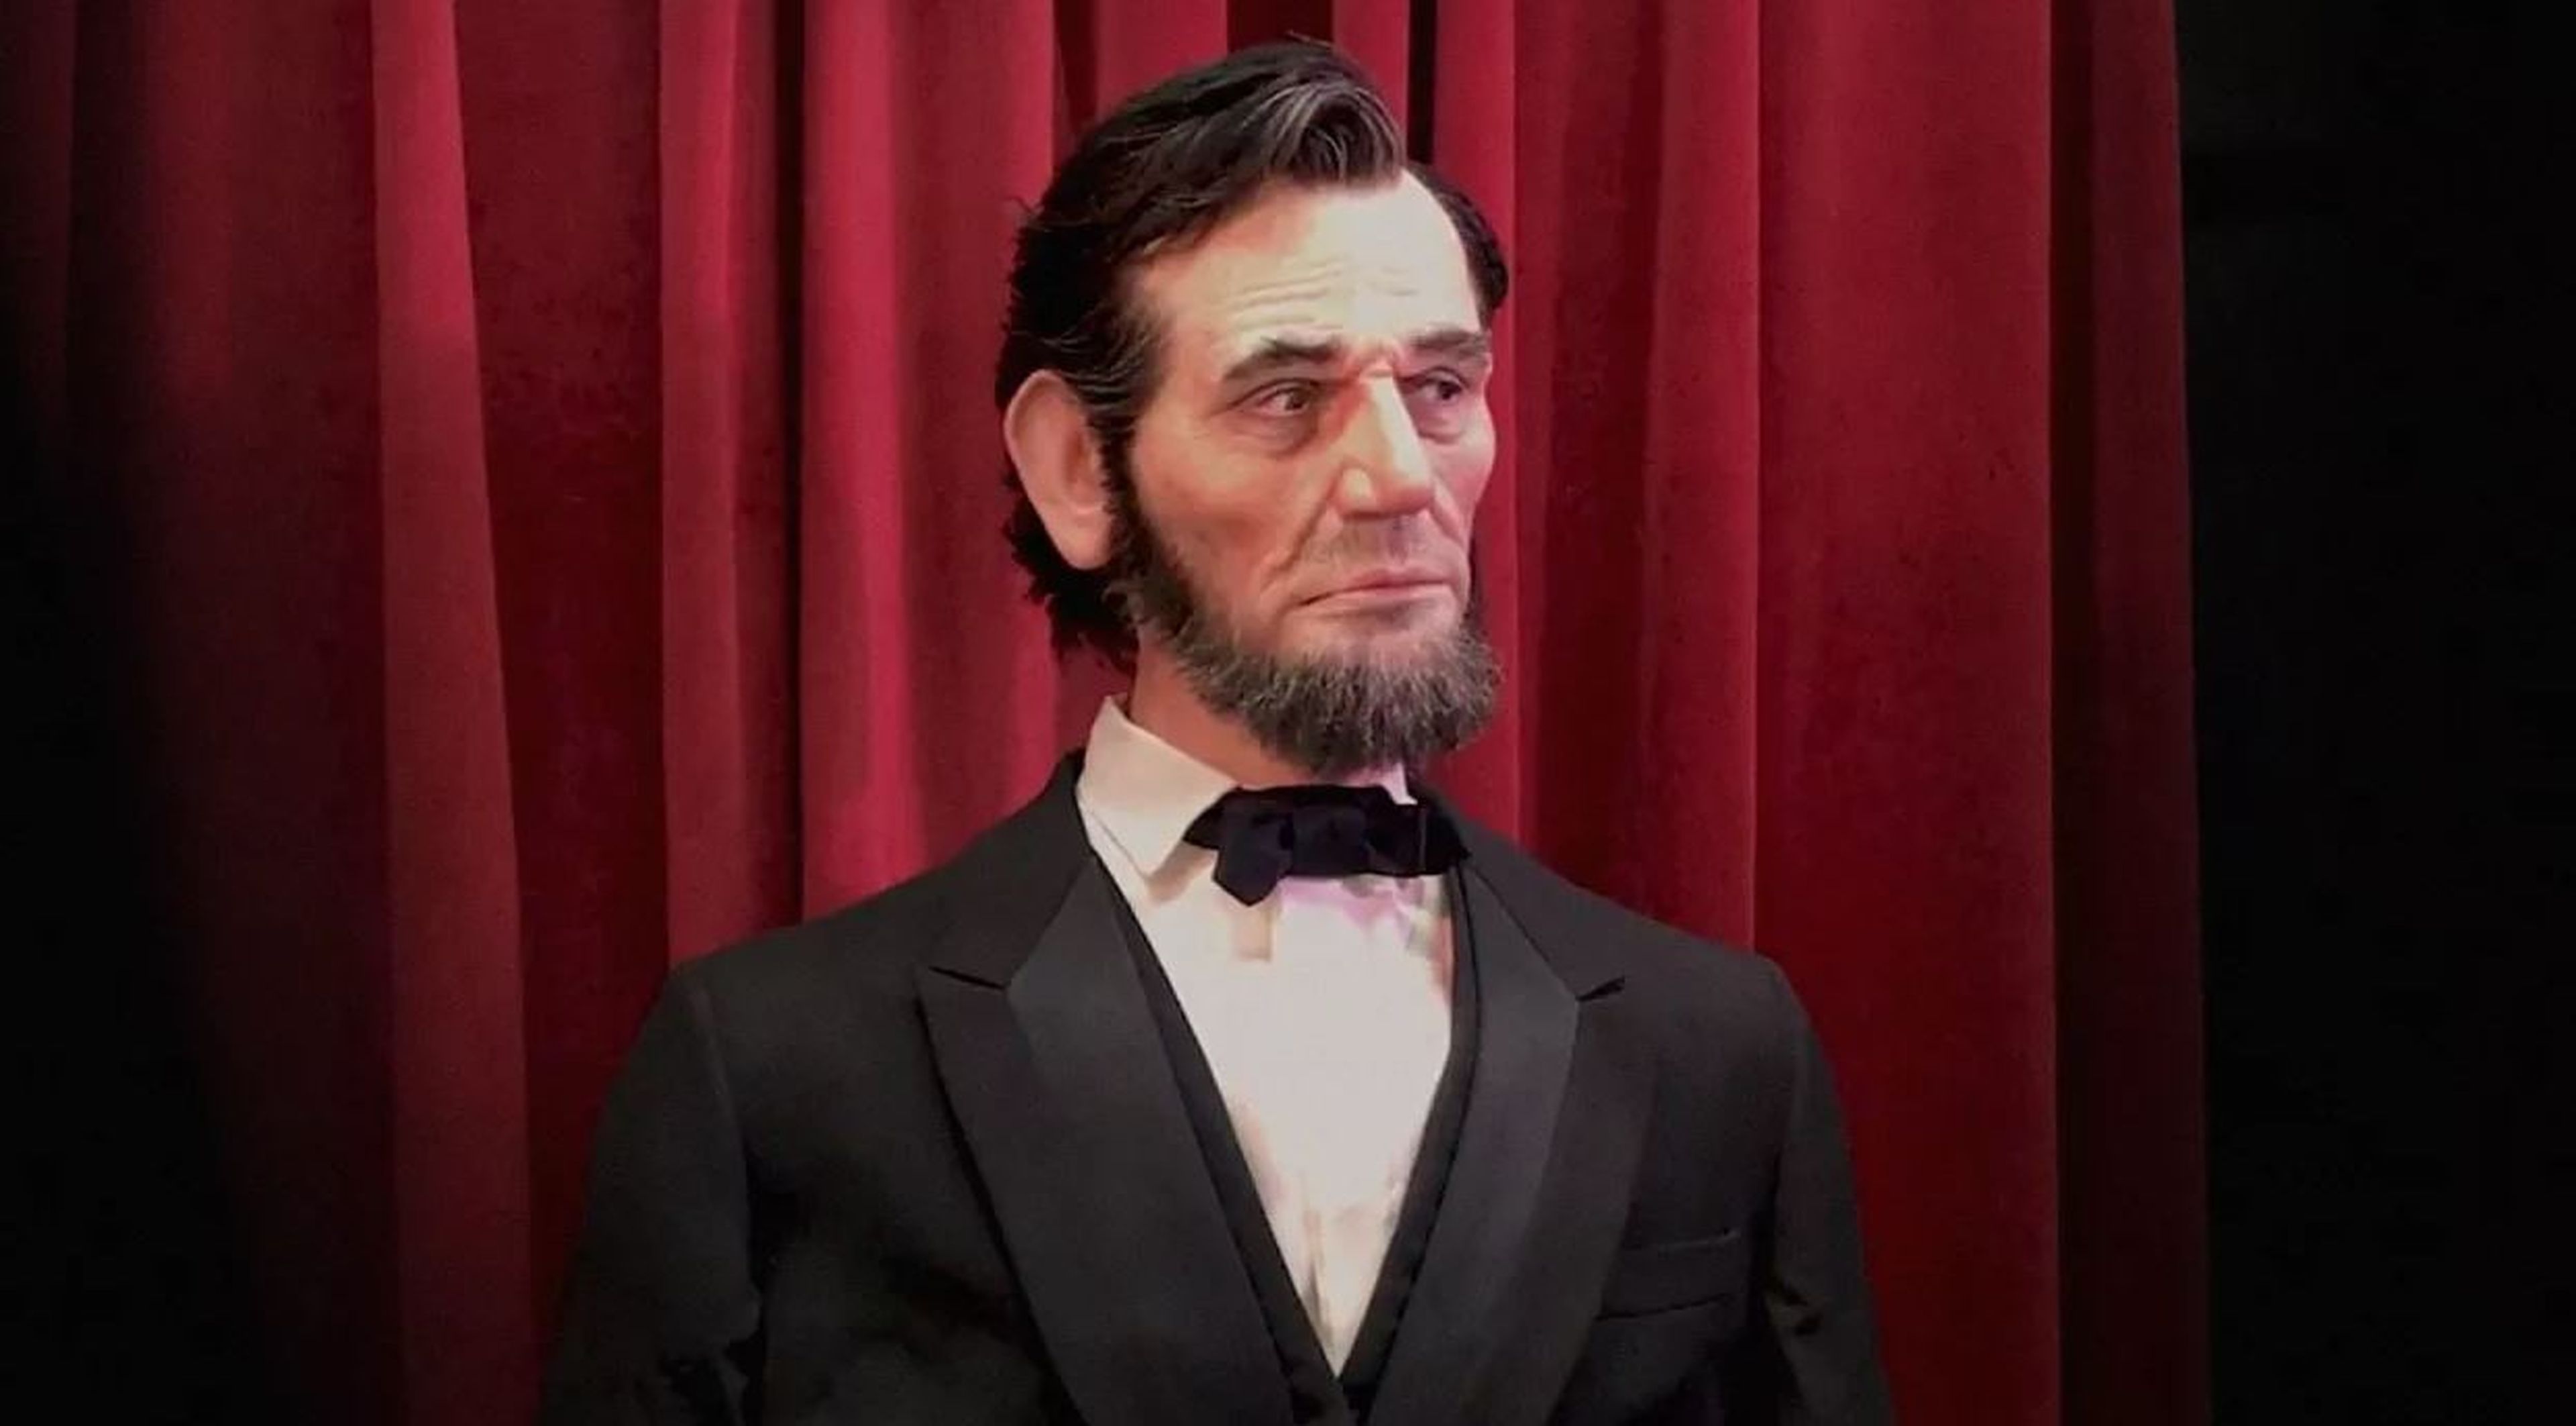 El animatrónico de Abraham Lincoln de los parques Disney.